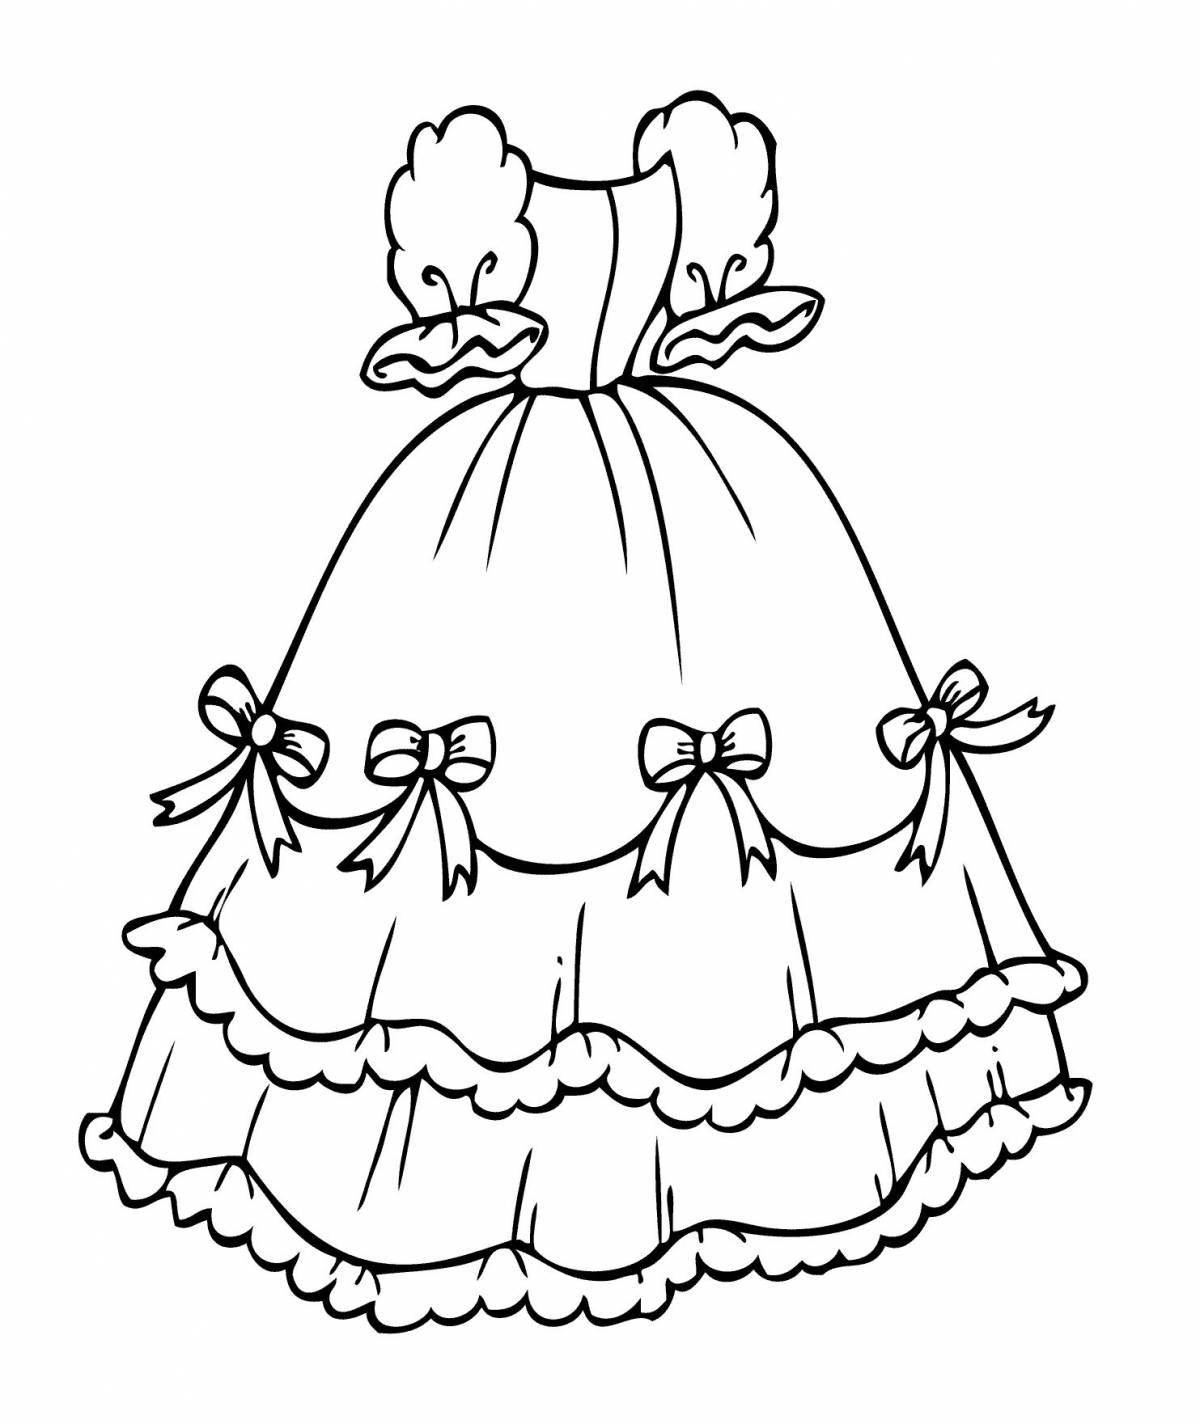 Раскраска очаровательное кукольное платье для детей 4-5 лет